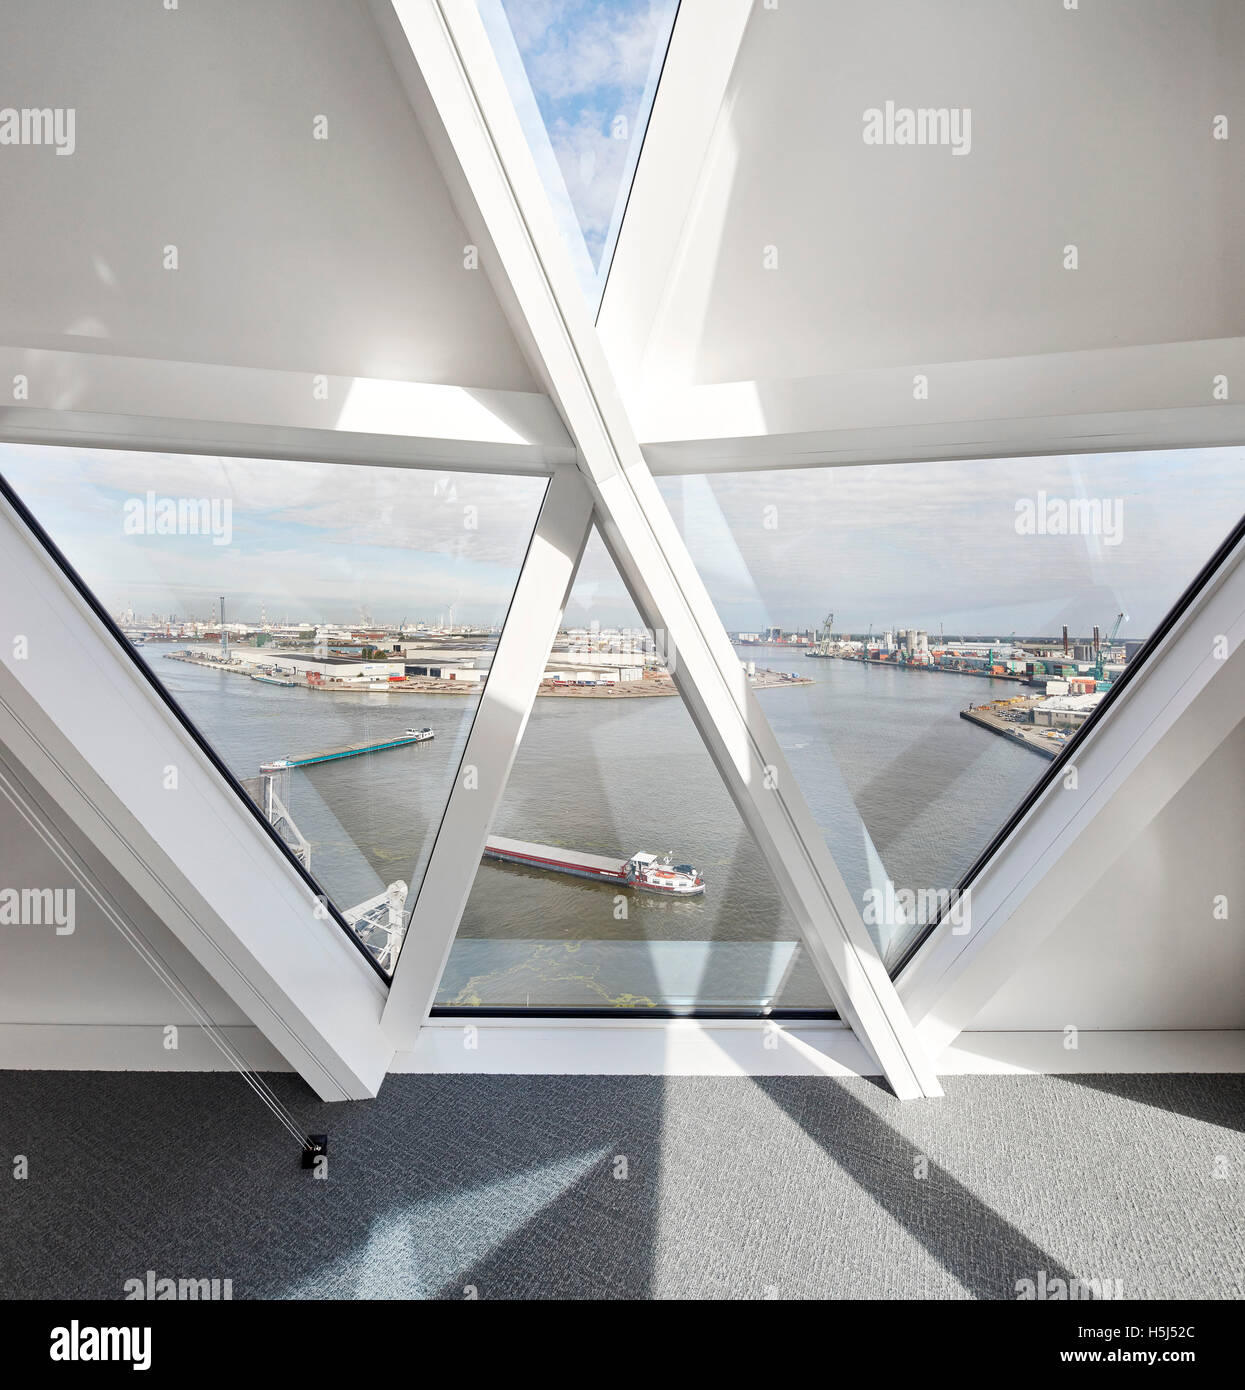 Los cristales de la ventana triangular. Casa del puerto de Amberes, Bélgica. Arquitecto: Zaha Hadid Architects, 2016. Foto de stock